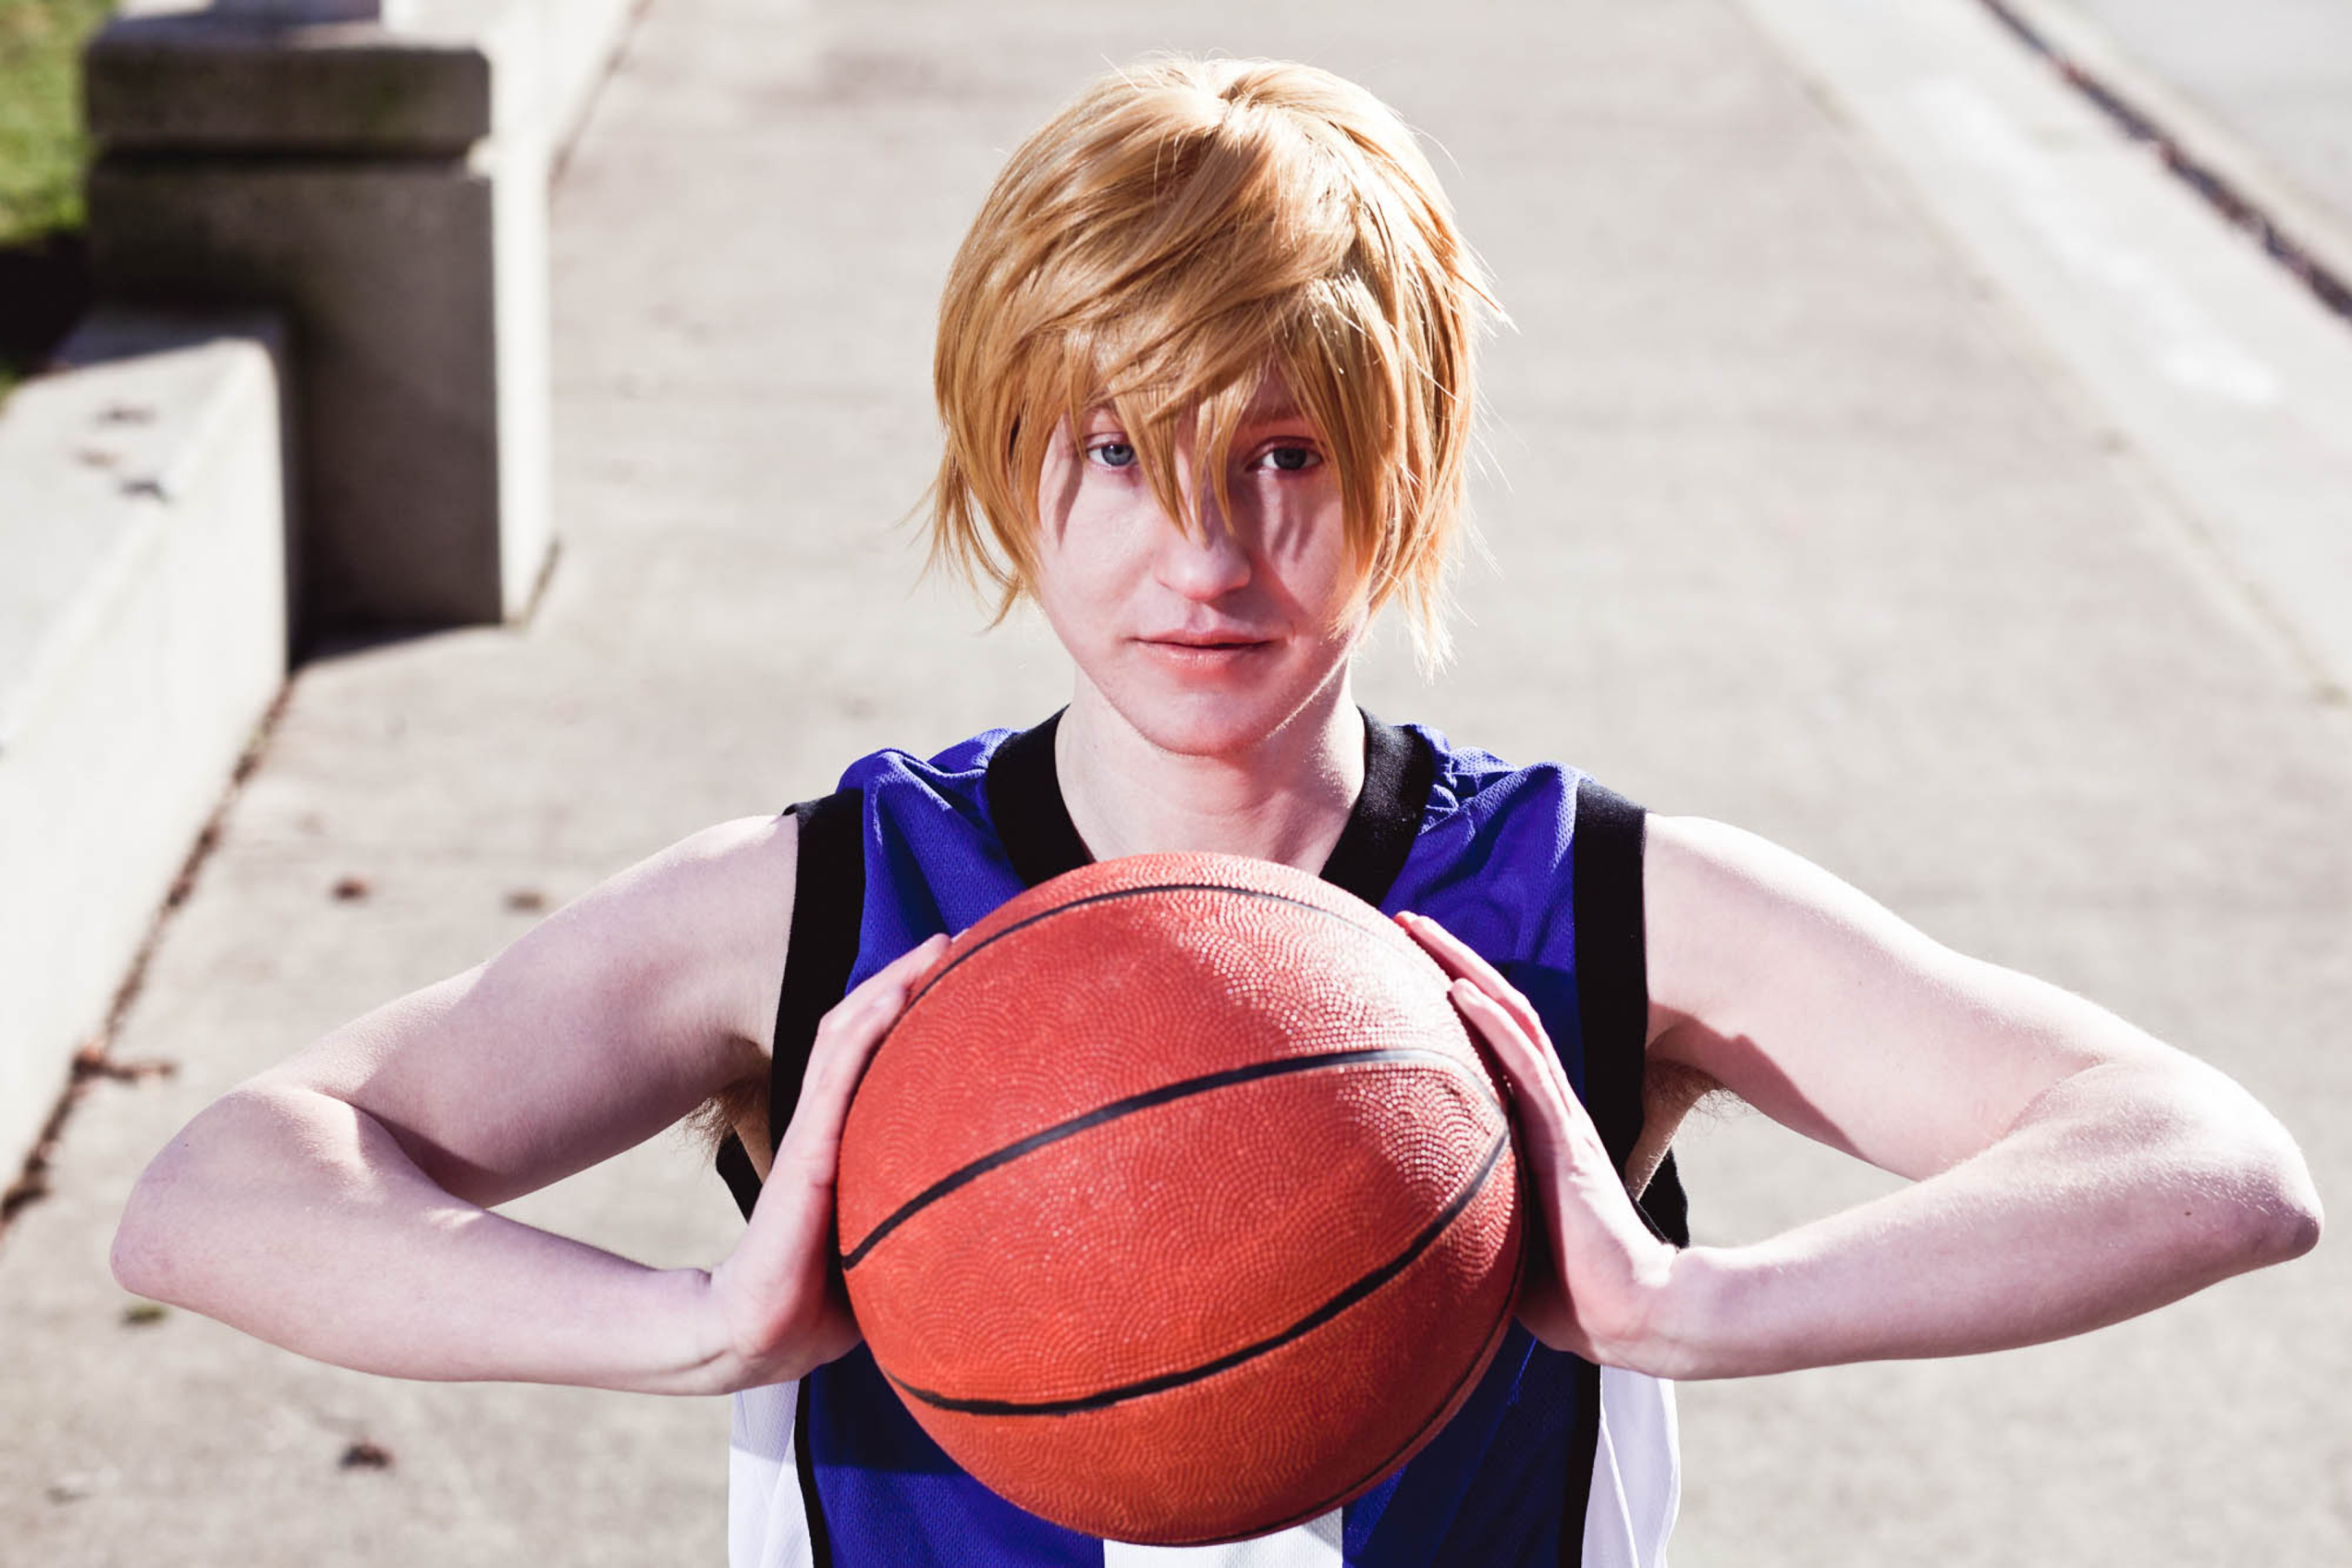 Ball guy. Парень с баскетбольным мячом. Юноша баскетболист. Баскетбол фотосессия мальчиков. Красивый парень с баскетбольным мячом.